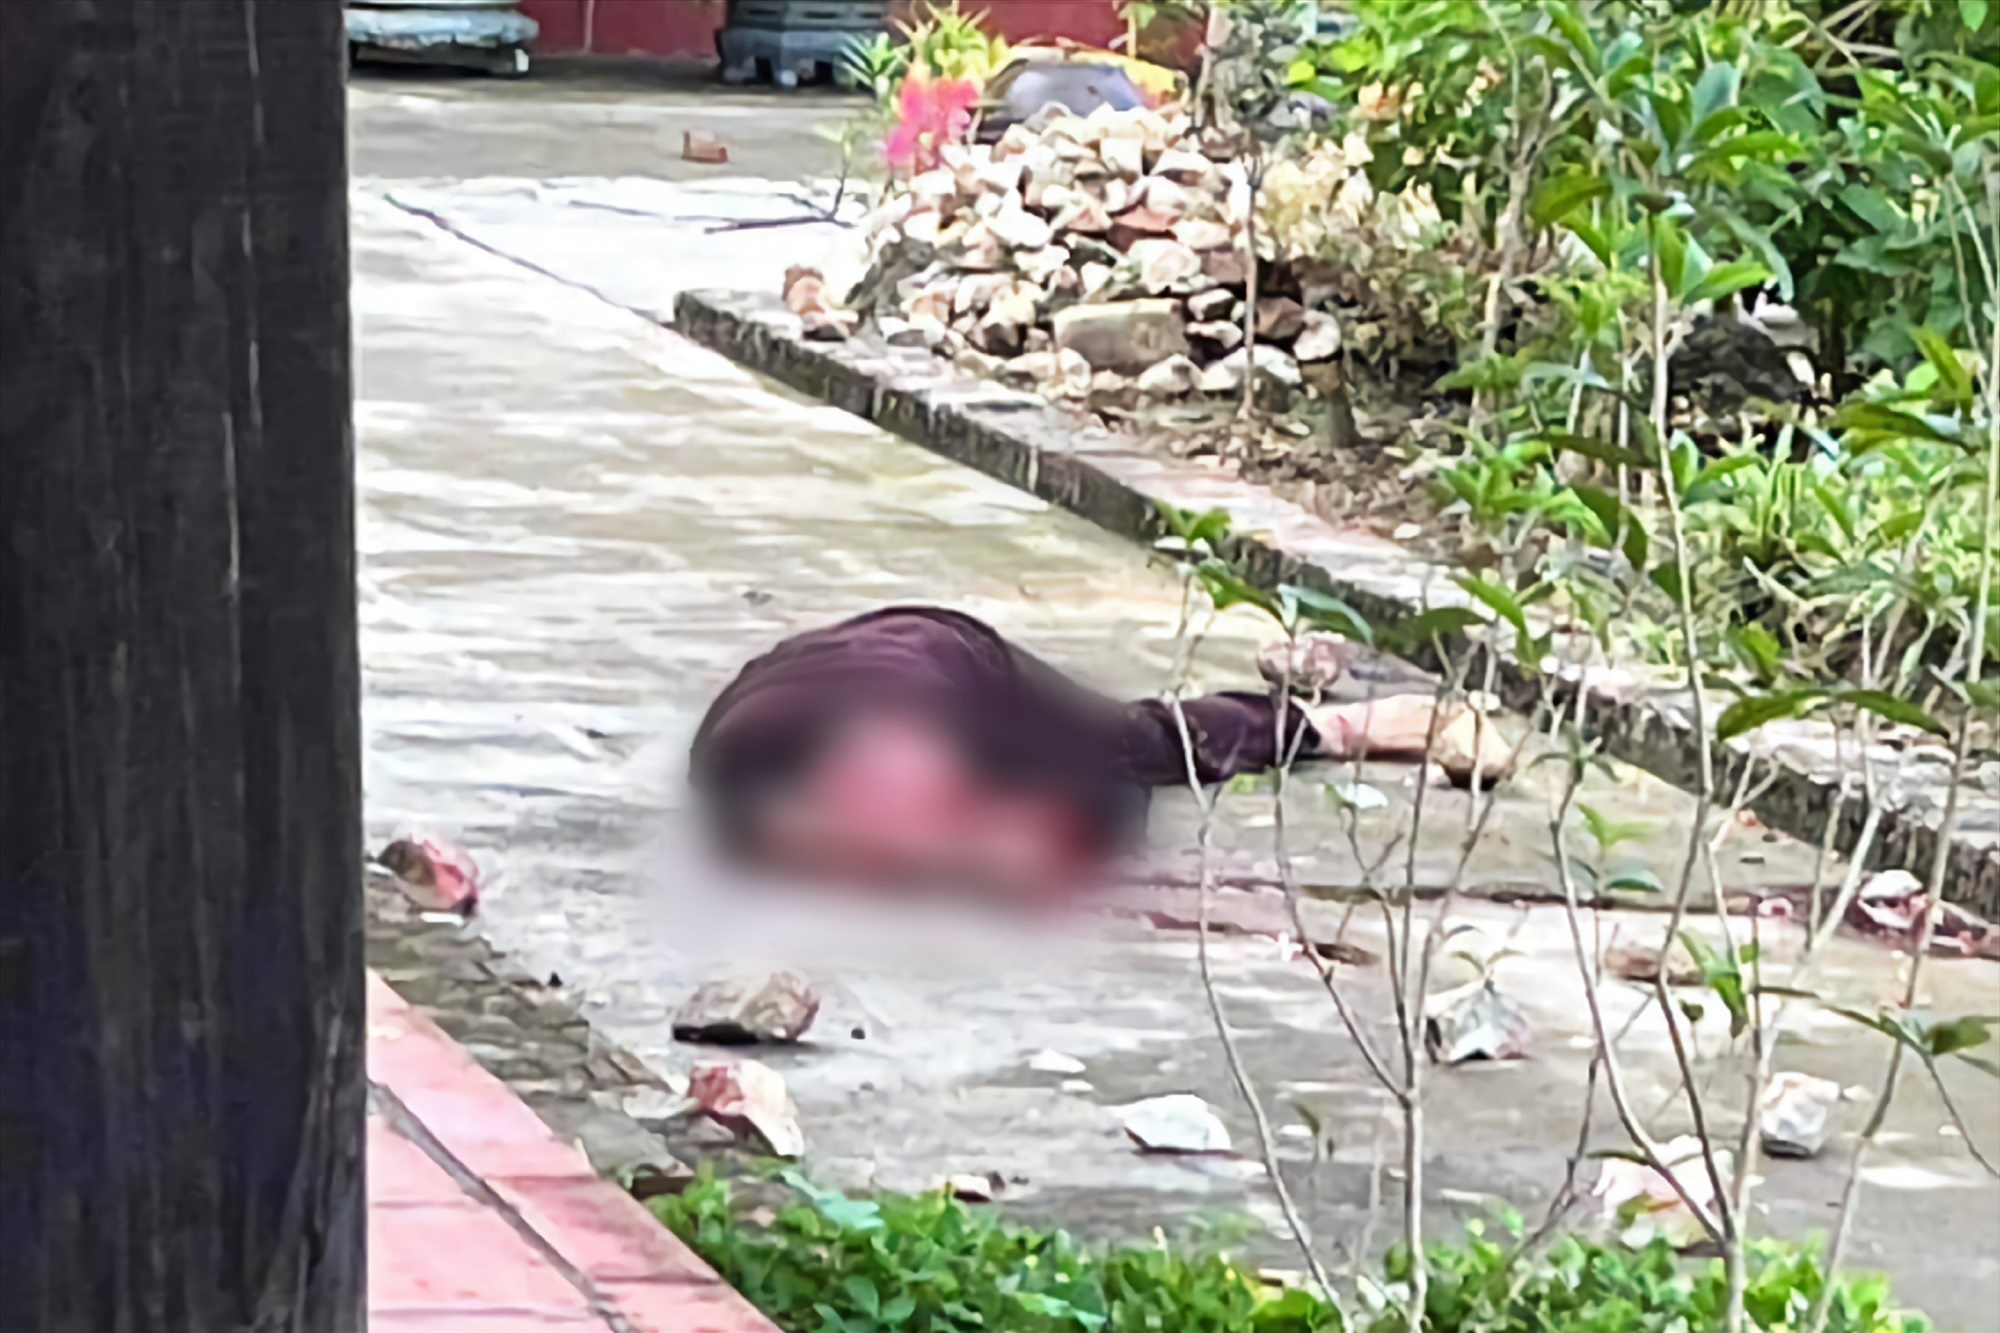 Danh tính của người phụ nữ mặc áo phật tử bị sát hại ở Phú Thọ - Ảnh 1